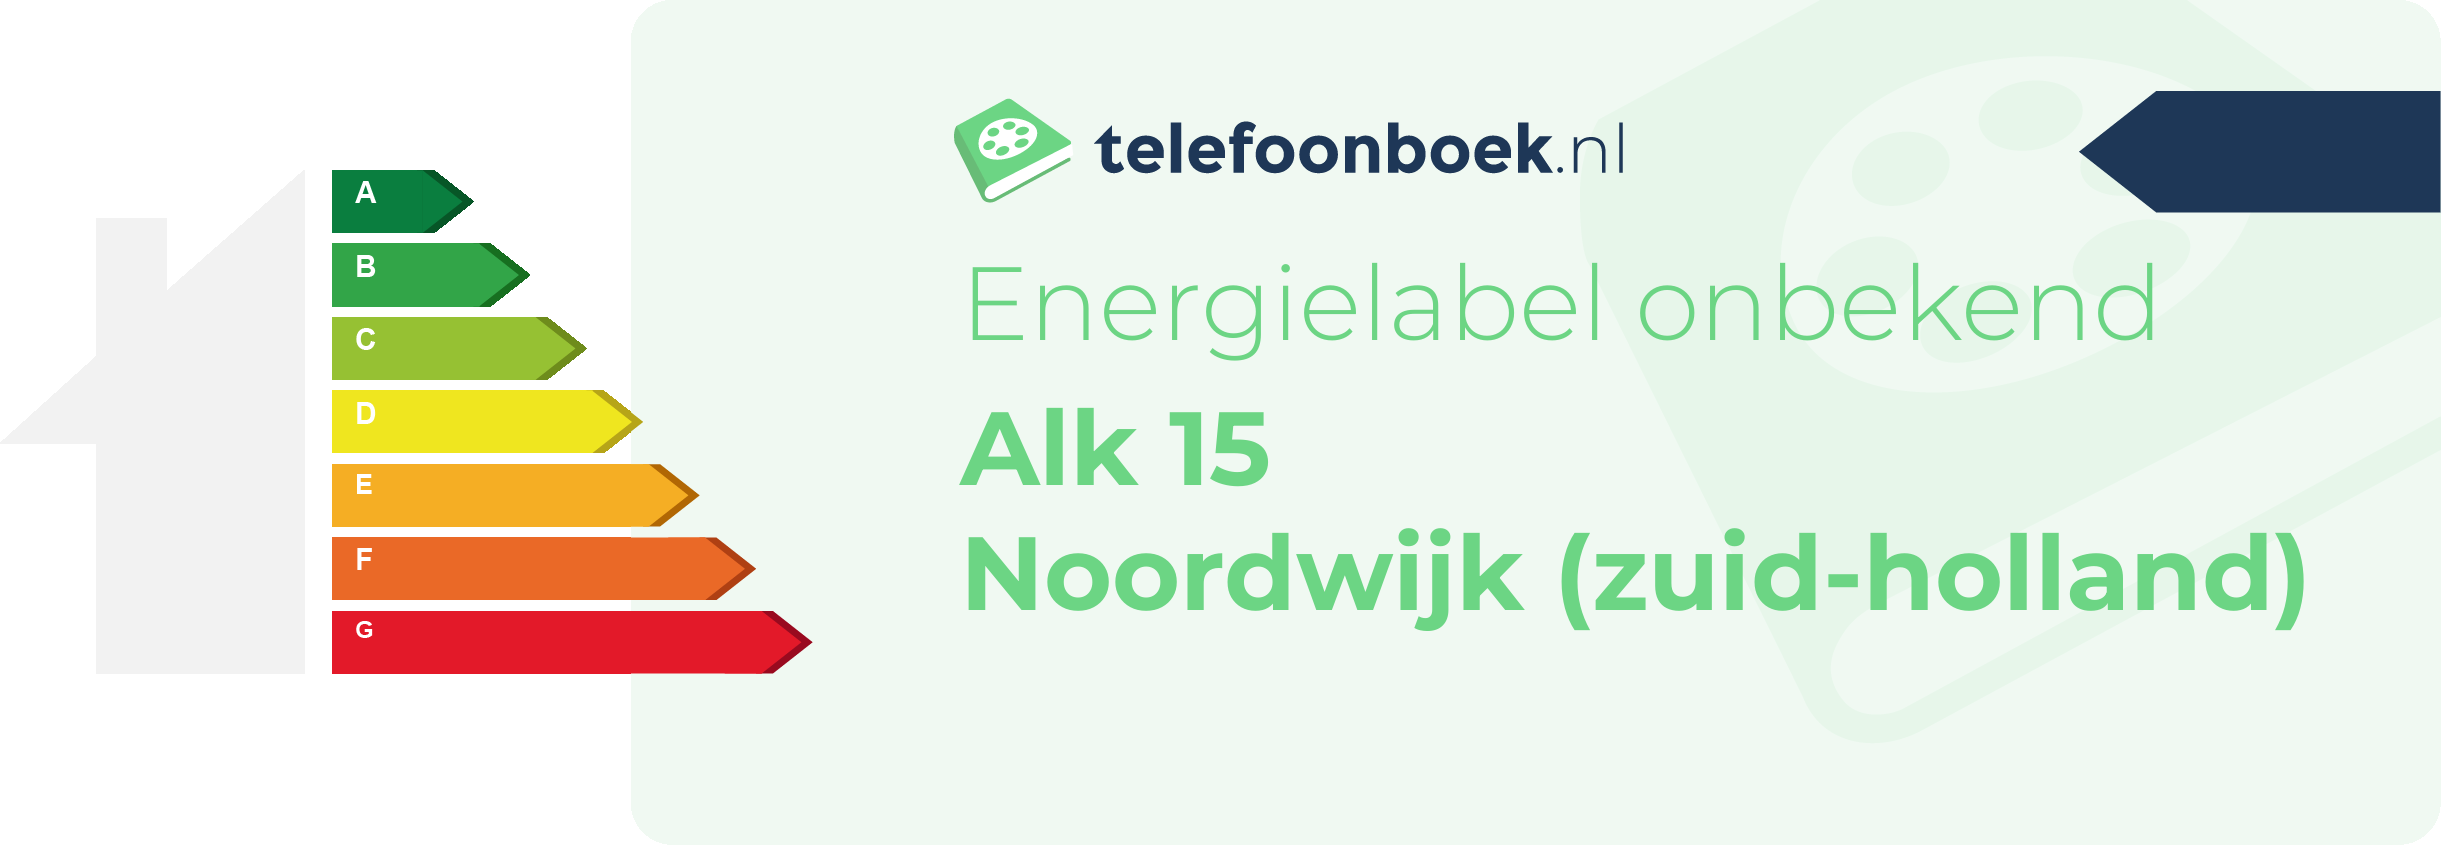 Energielabel Alk 15 Noordwijk (Zuid-Holland)